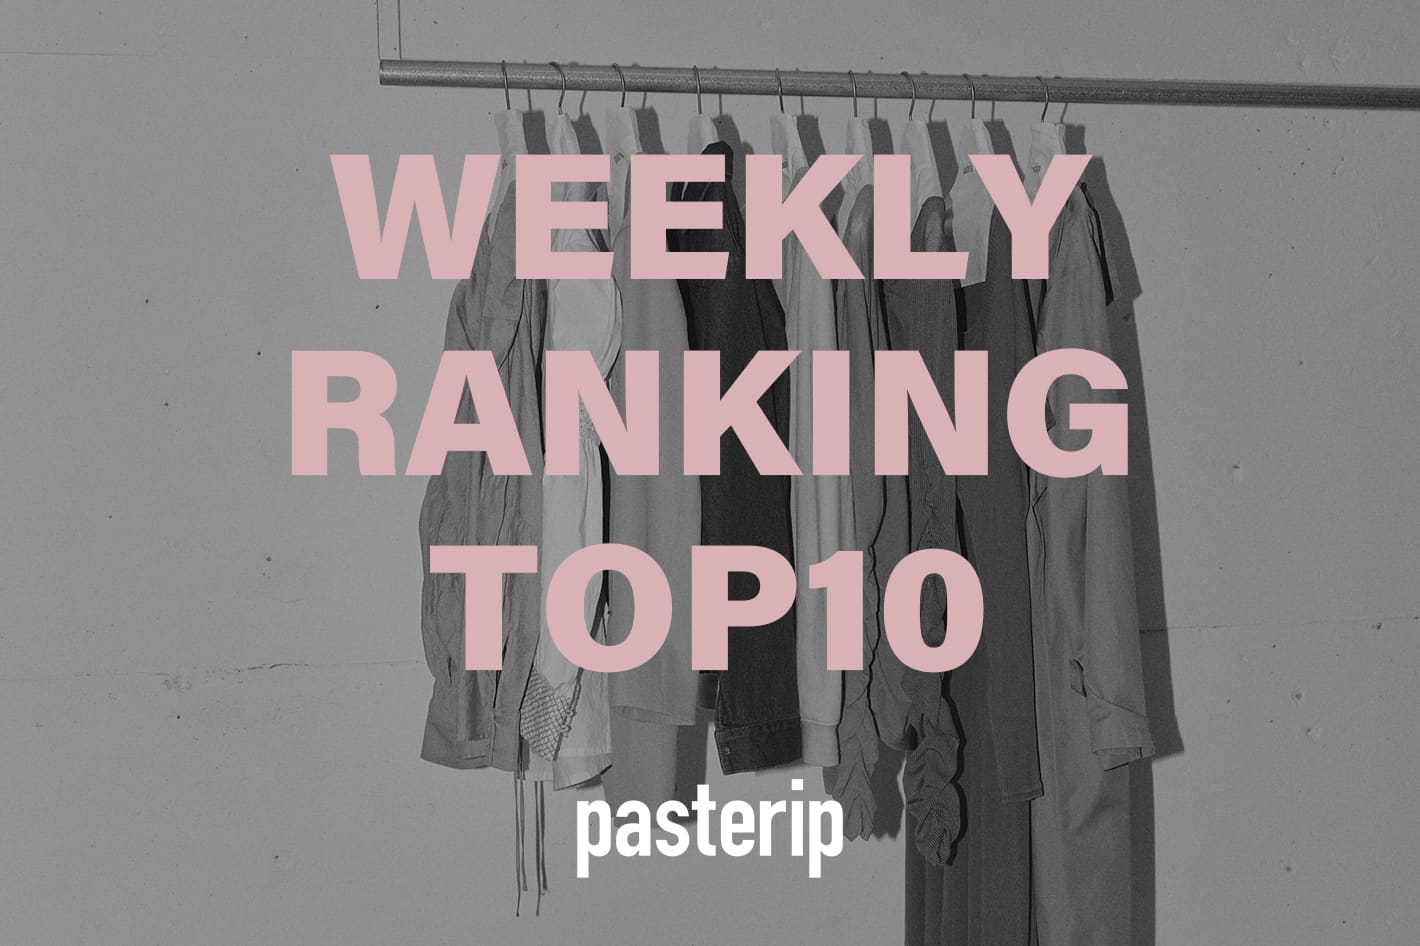 Pasterip WEEKLY RANKING TOP10